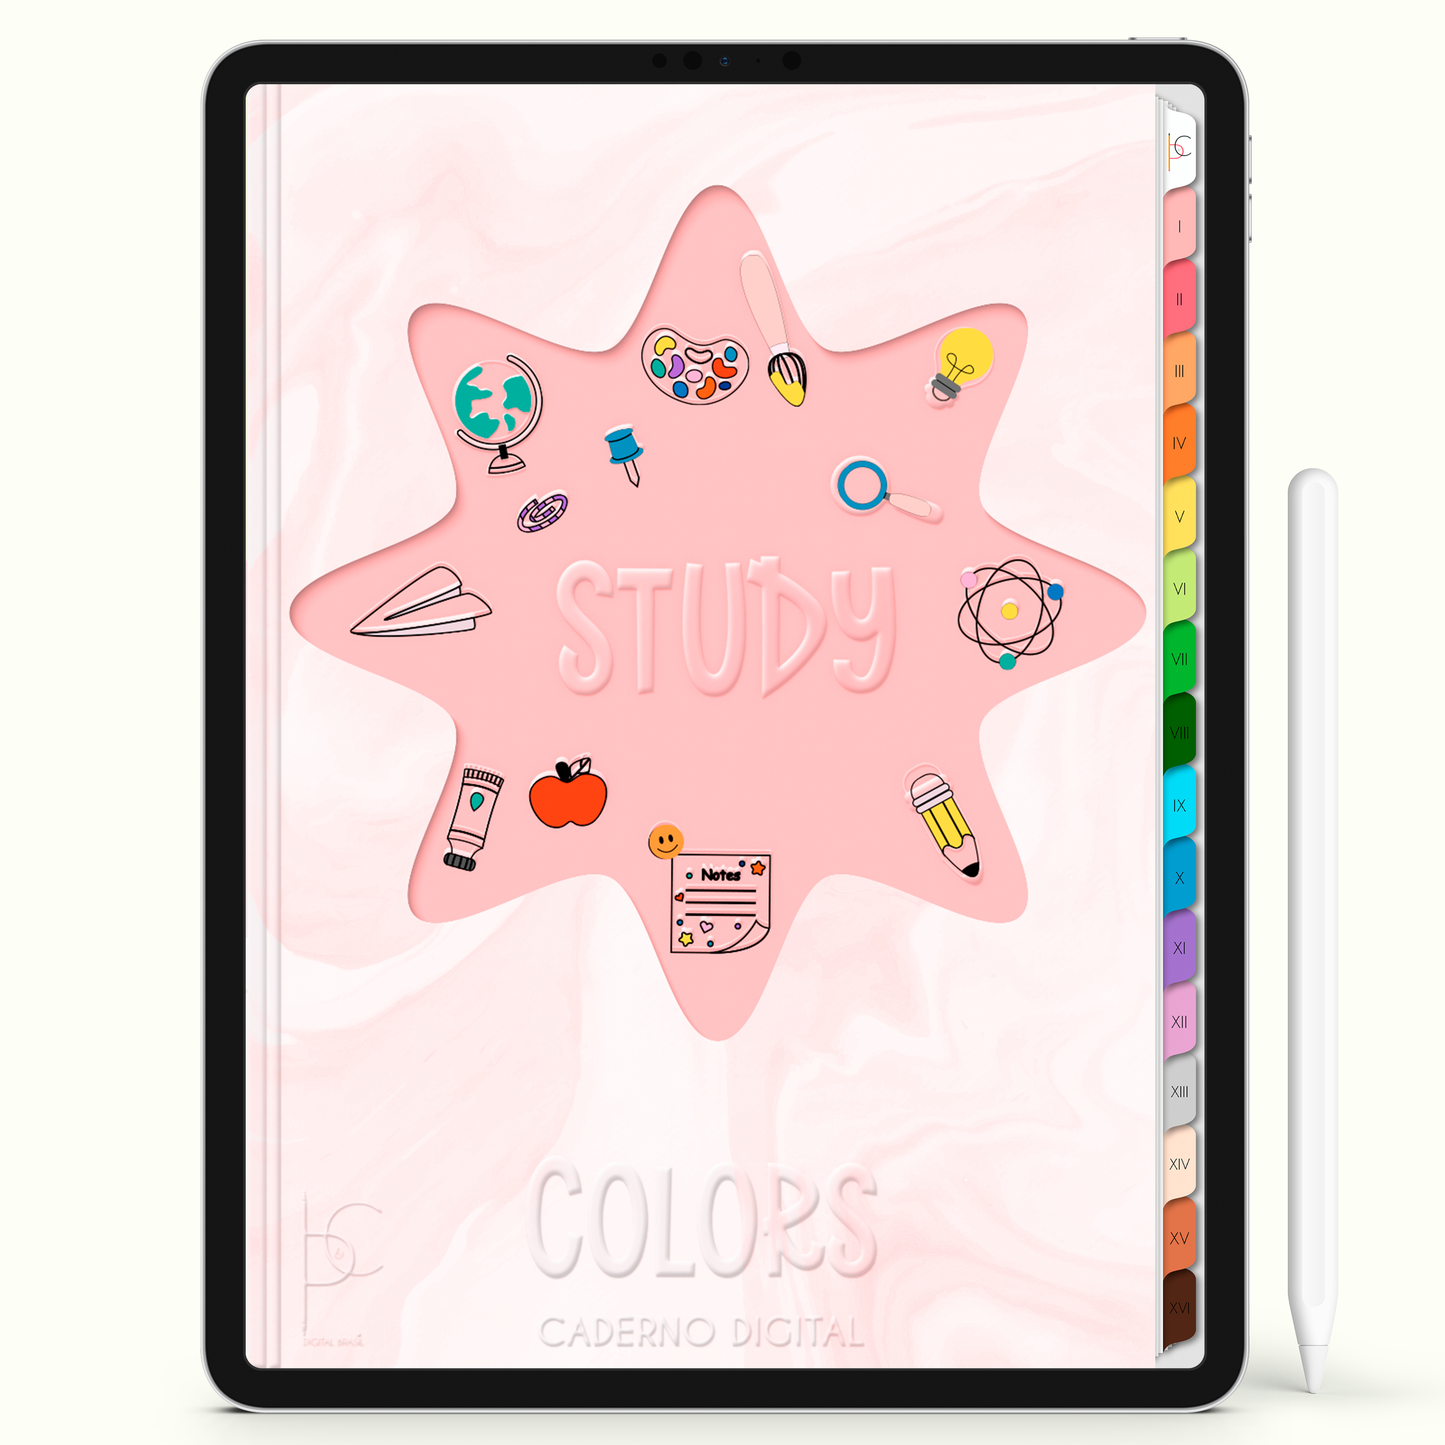 Caderno Digital Colors Melhor dos Estudos 16 Matérias • Para iPad e Tablet Android • Download instantâneo • Sustentável